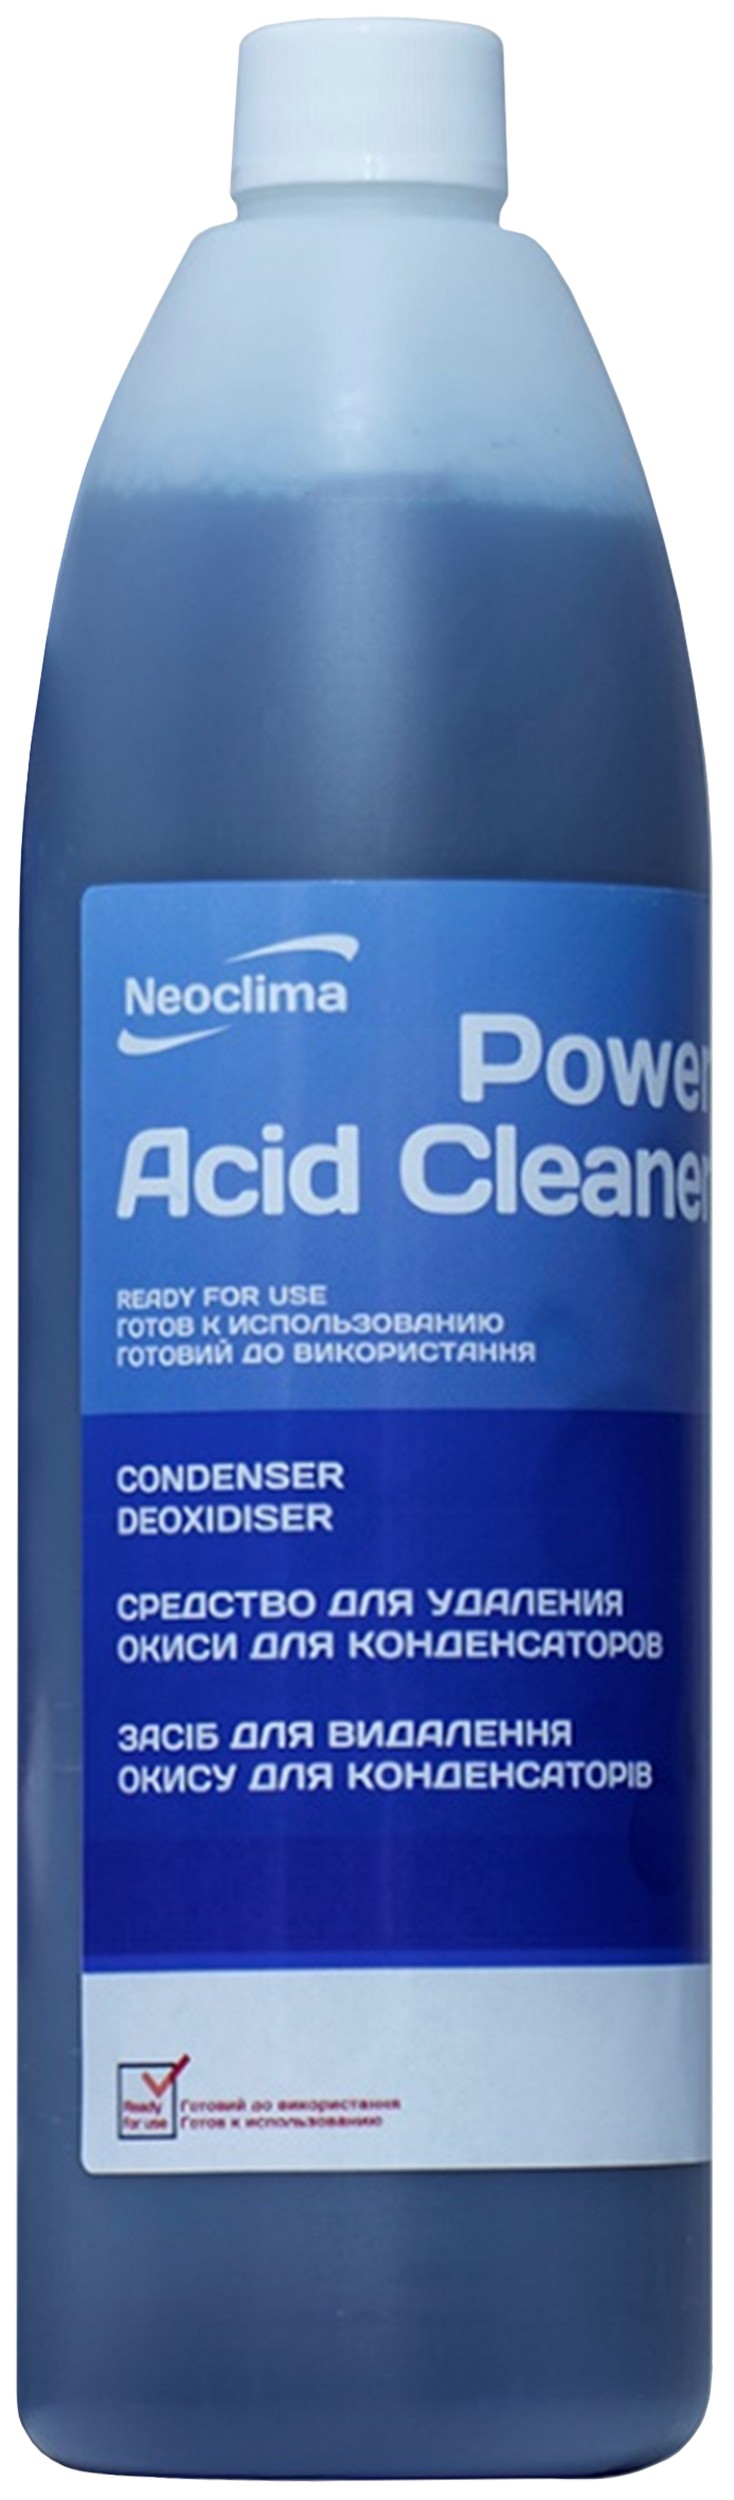 Відгуки очищувач зовнішнього блоку Neoclima Power Acid Cleaner 1 л, спрей в Україні